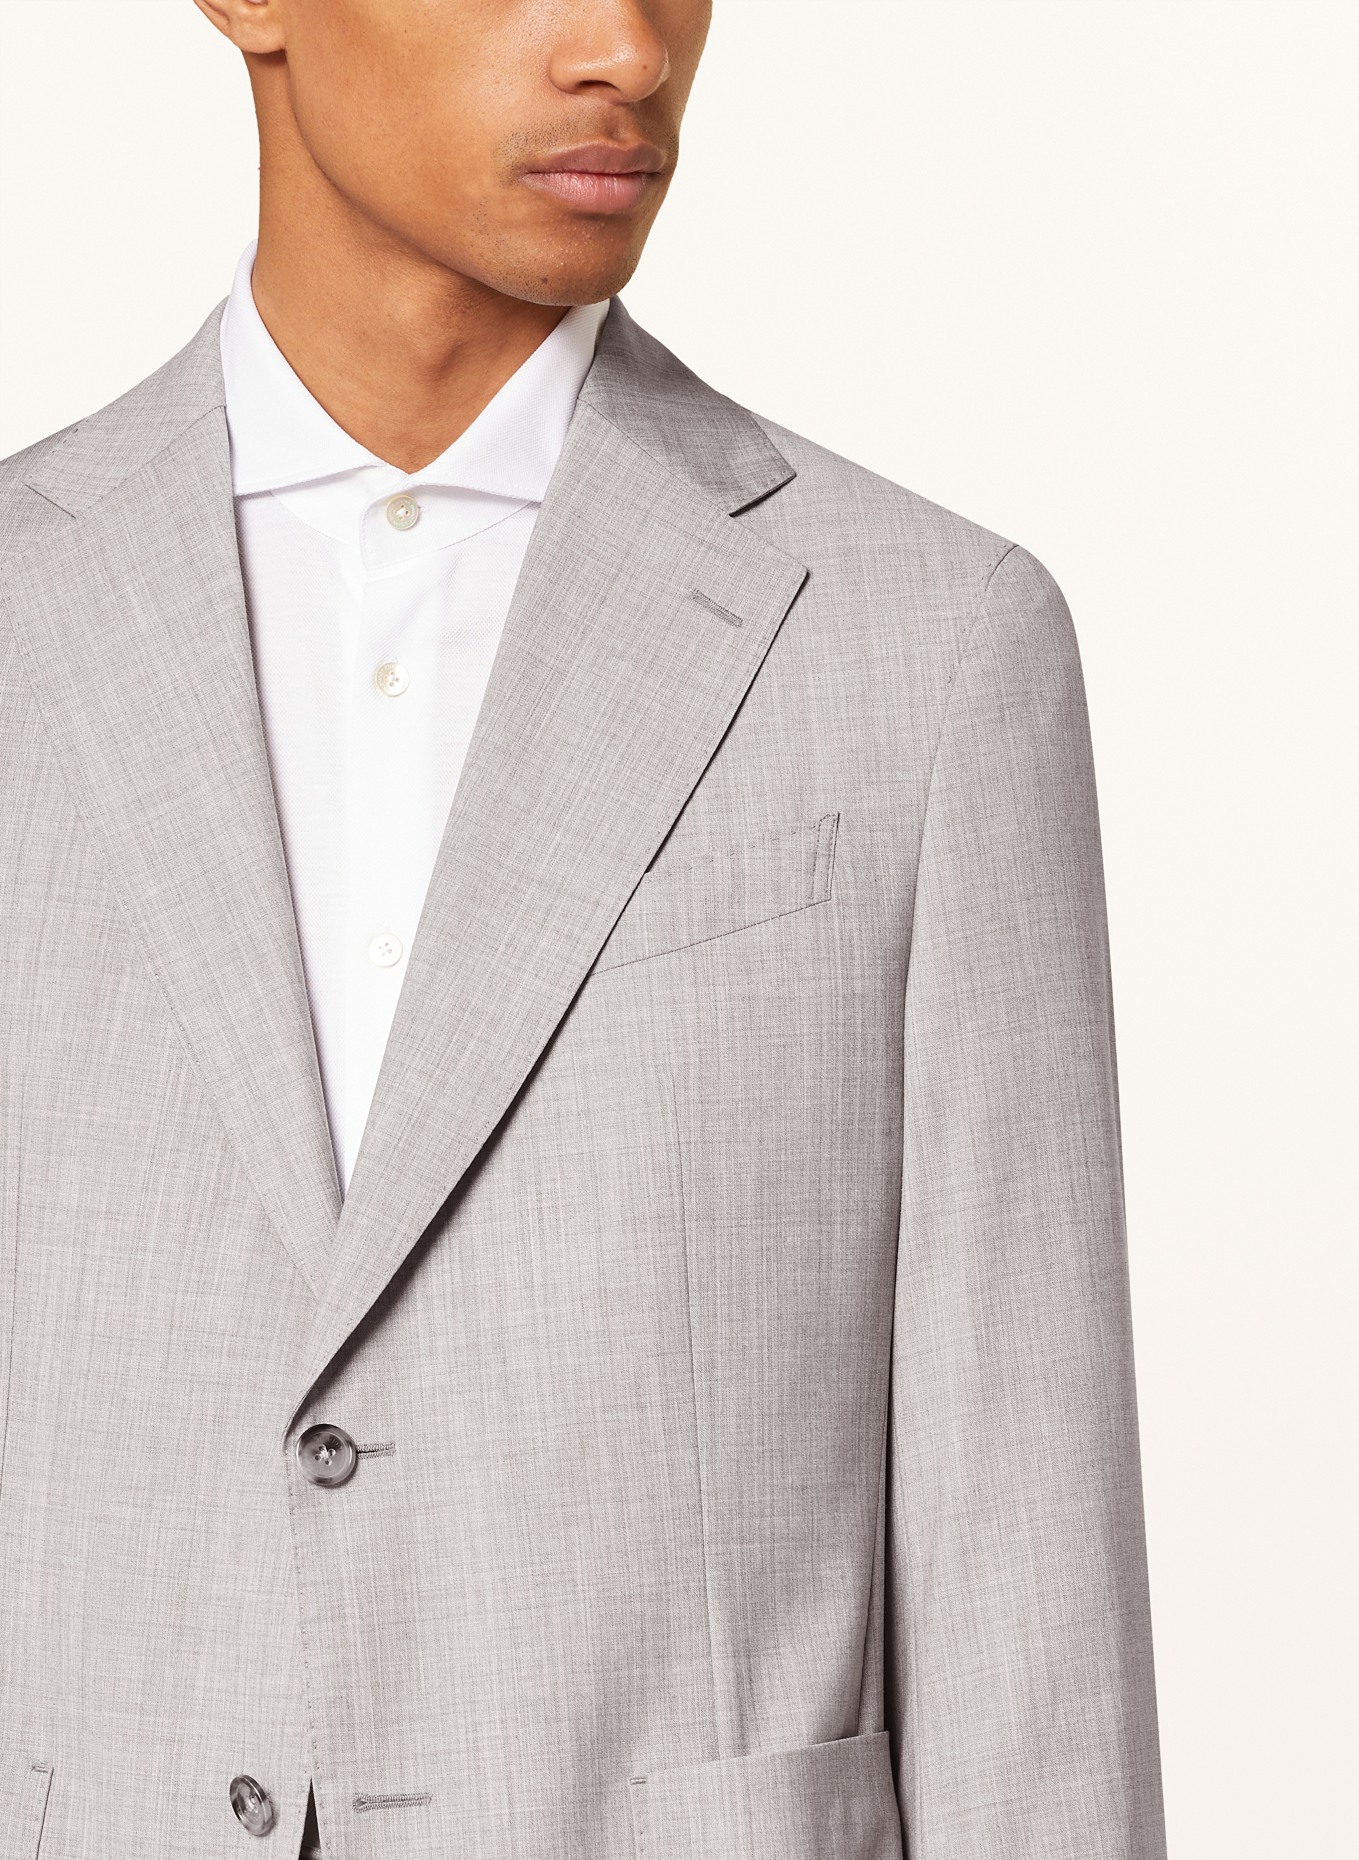 windsor. Suit jacket TRAVEL shaped Fit, Color: 035 Medium Grey                035 (Image 5)